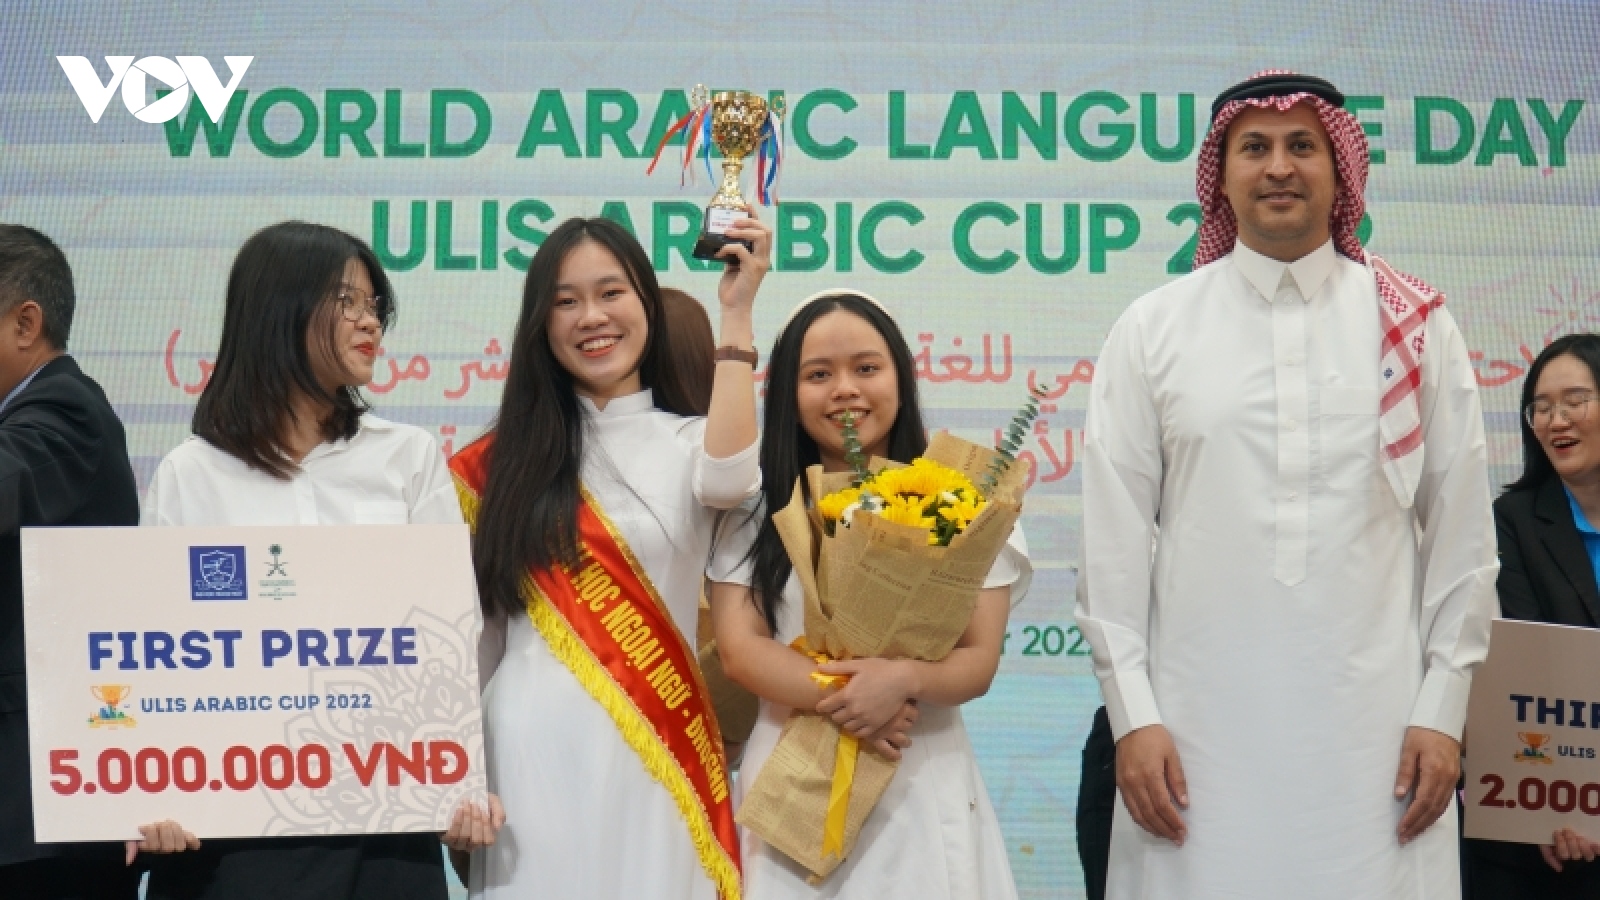 Lễ kỷ niệm Ngày Ngôn ngữ Tiếng Arab tại Việt Nam